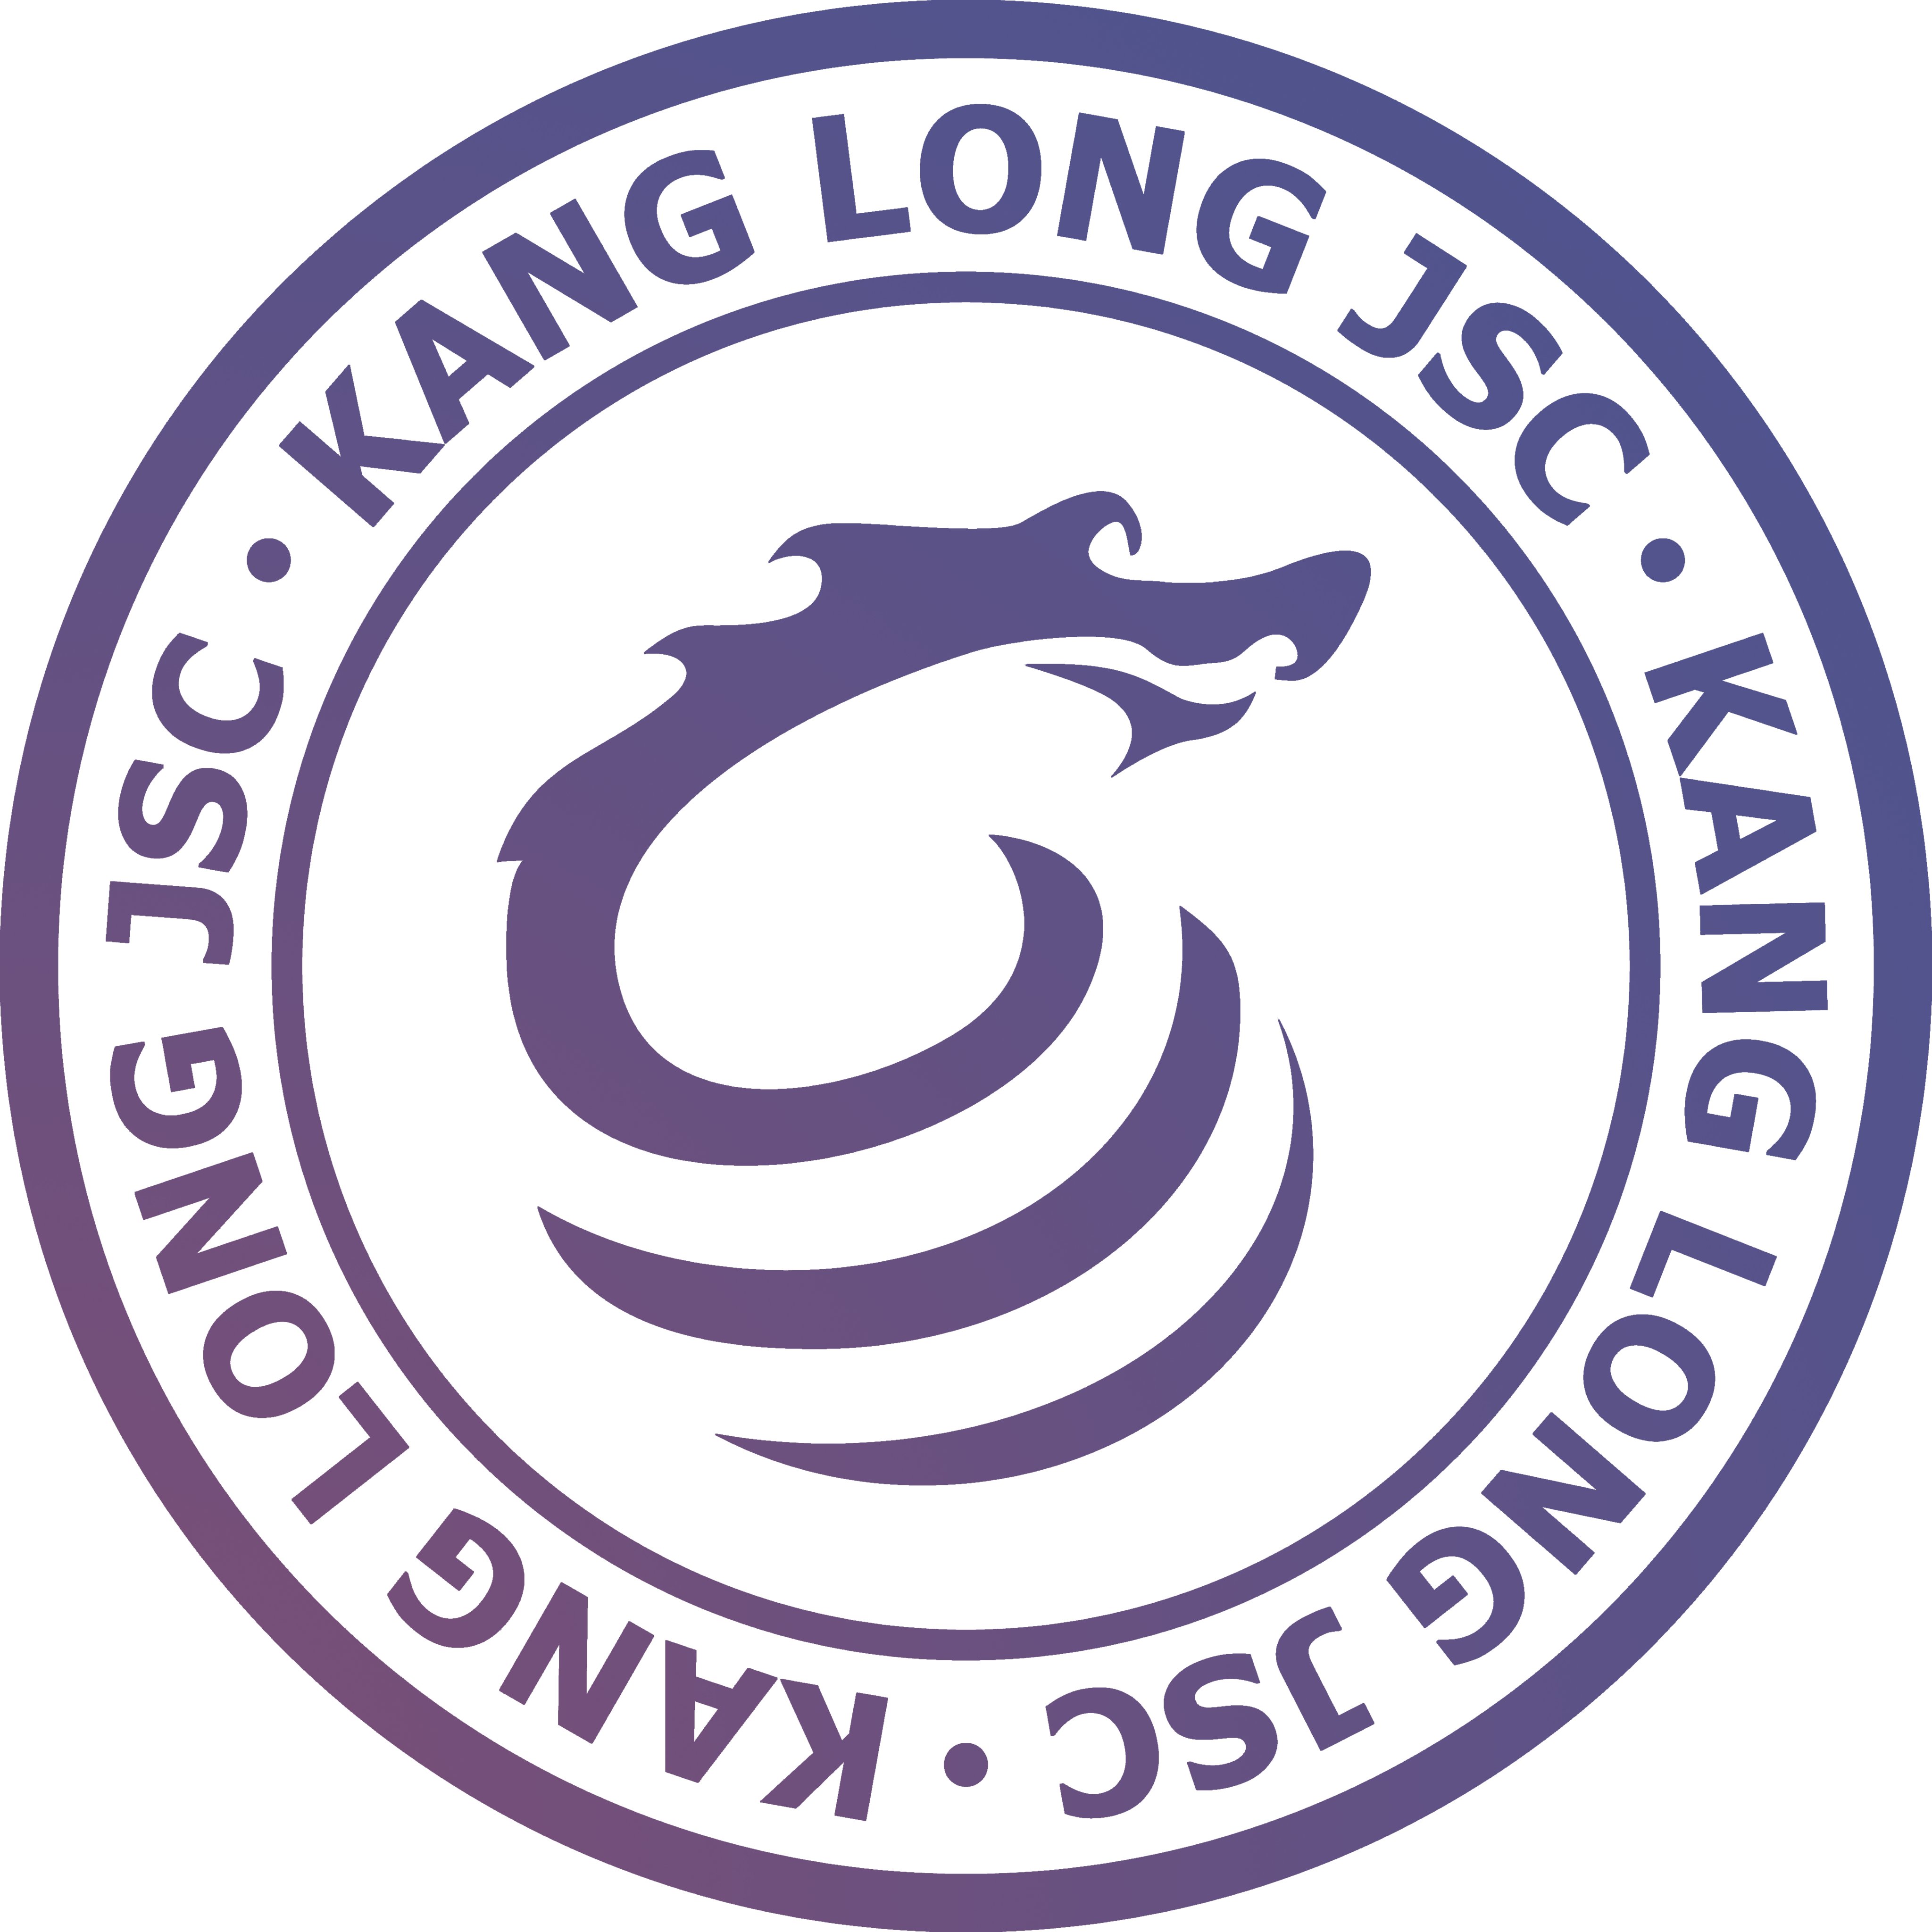 Công ty Cổ phần Đầu tư Đô thị Kang Long